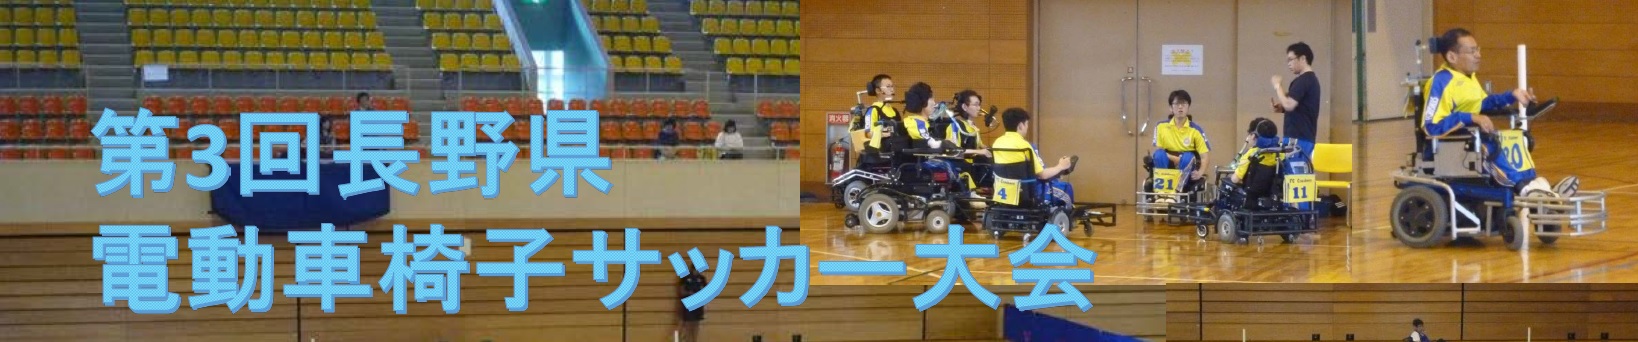 日本スポーツマスターズ2019サッカー競技 北信越予選会